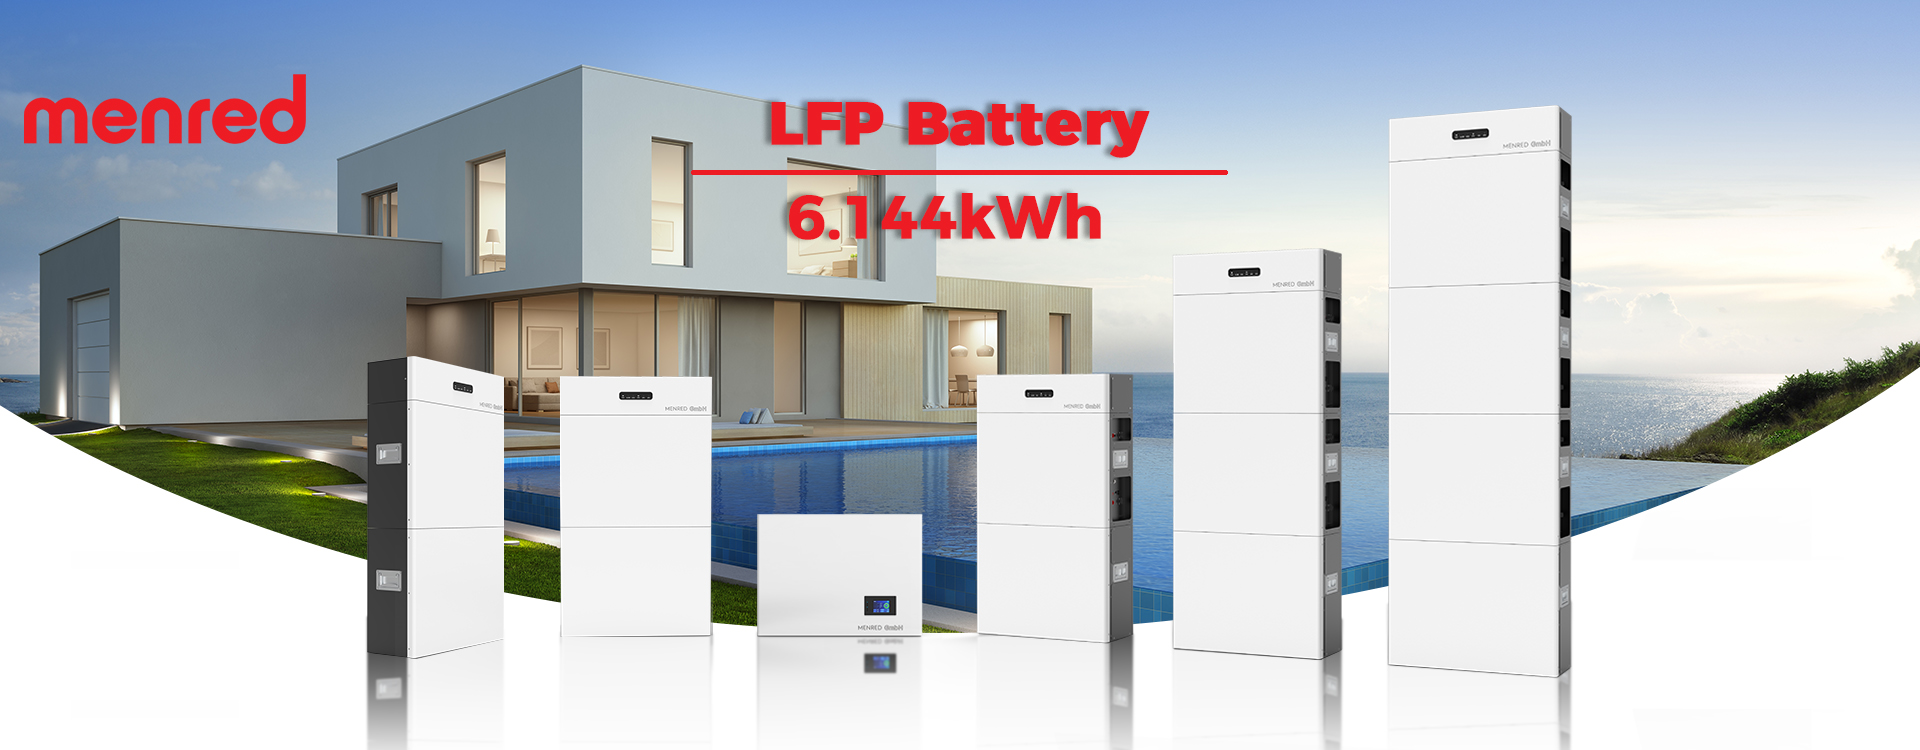 LifeP4 wandstroomopslagbatterij